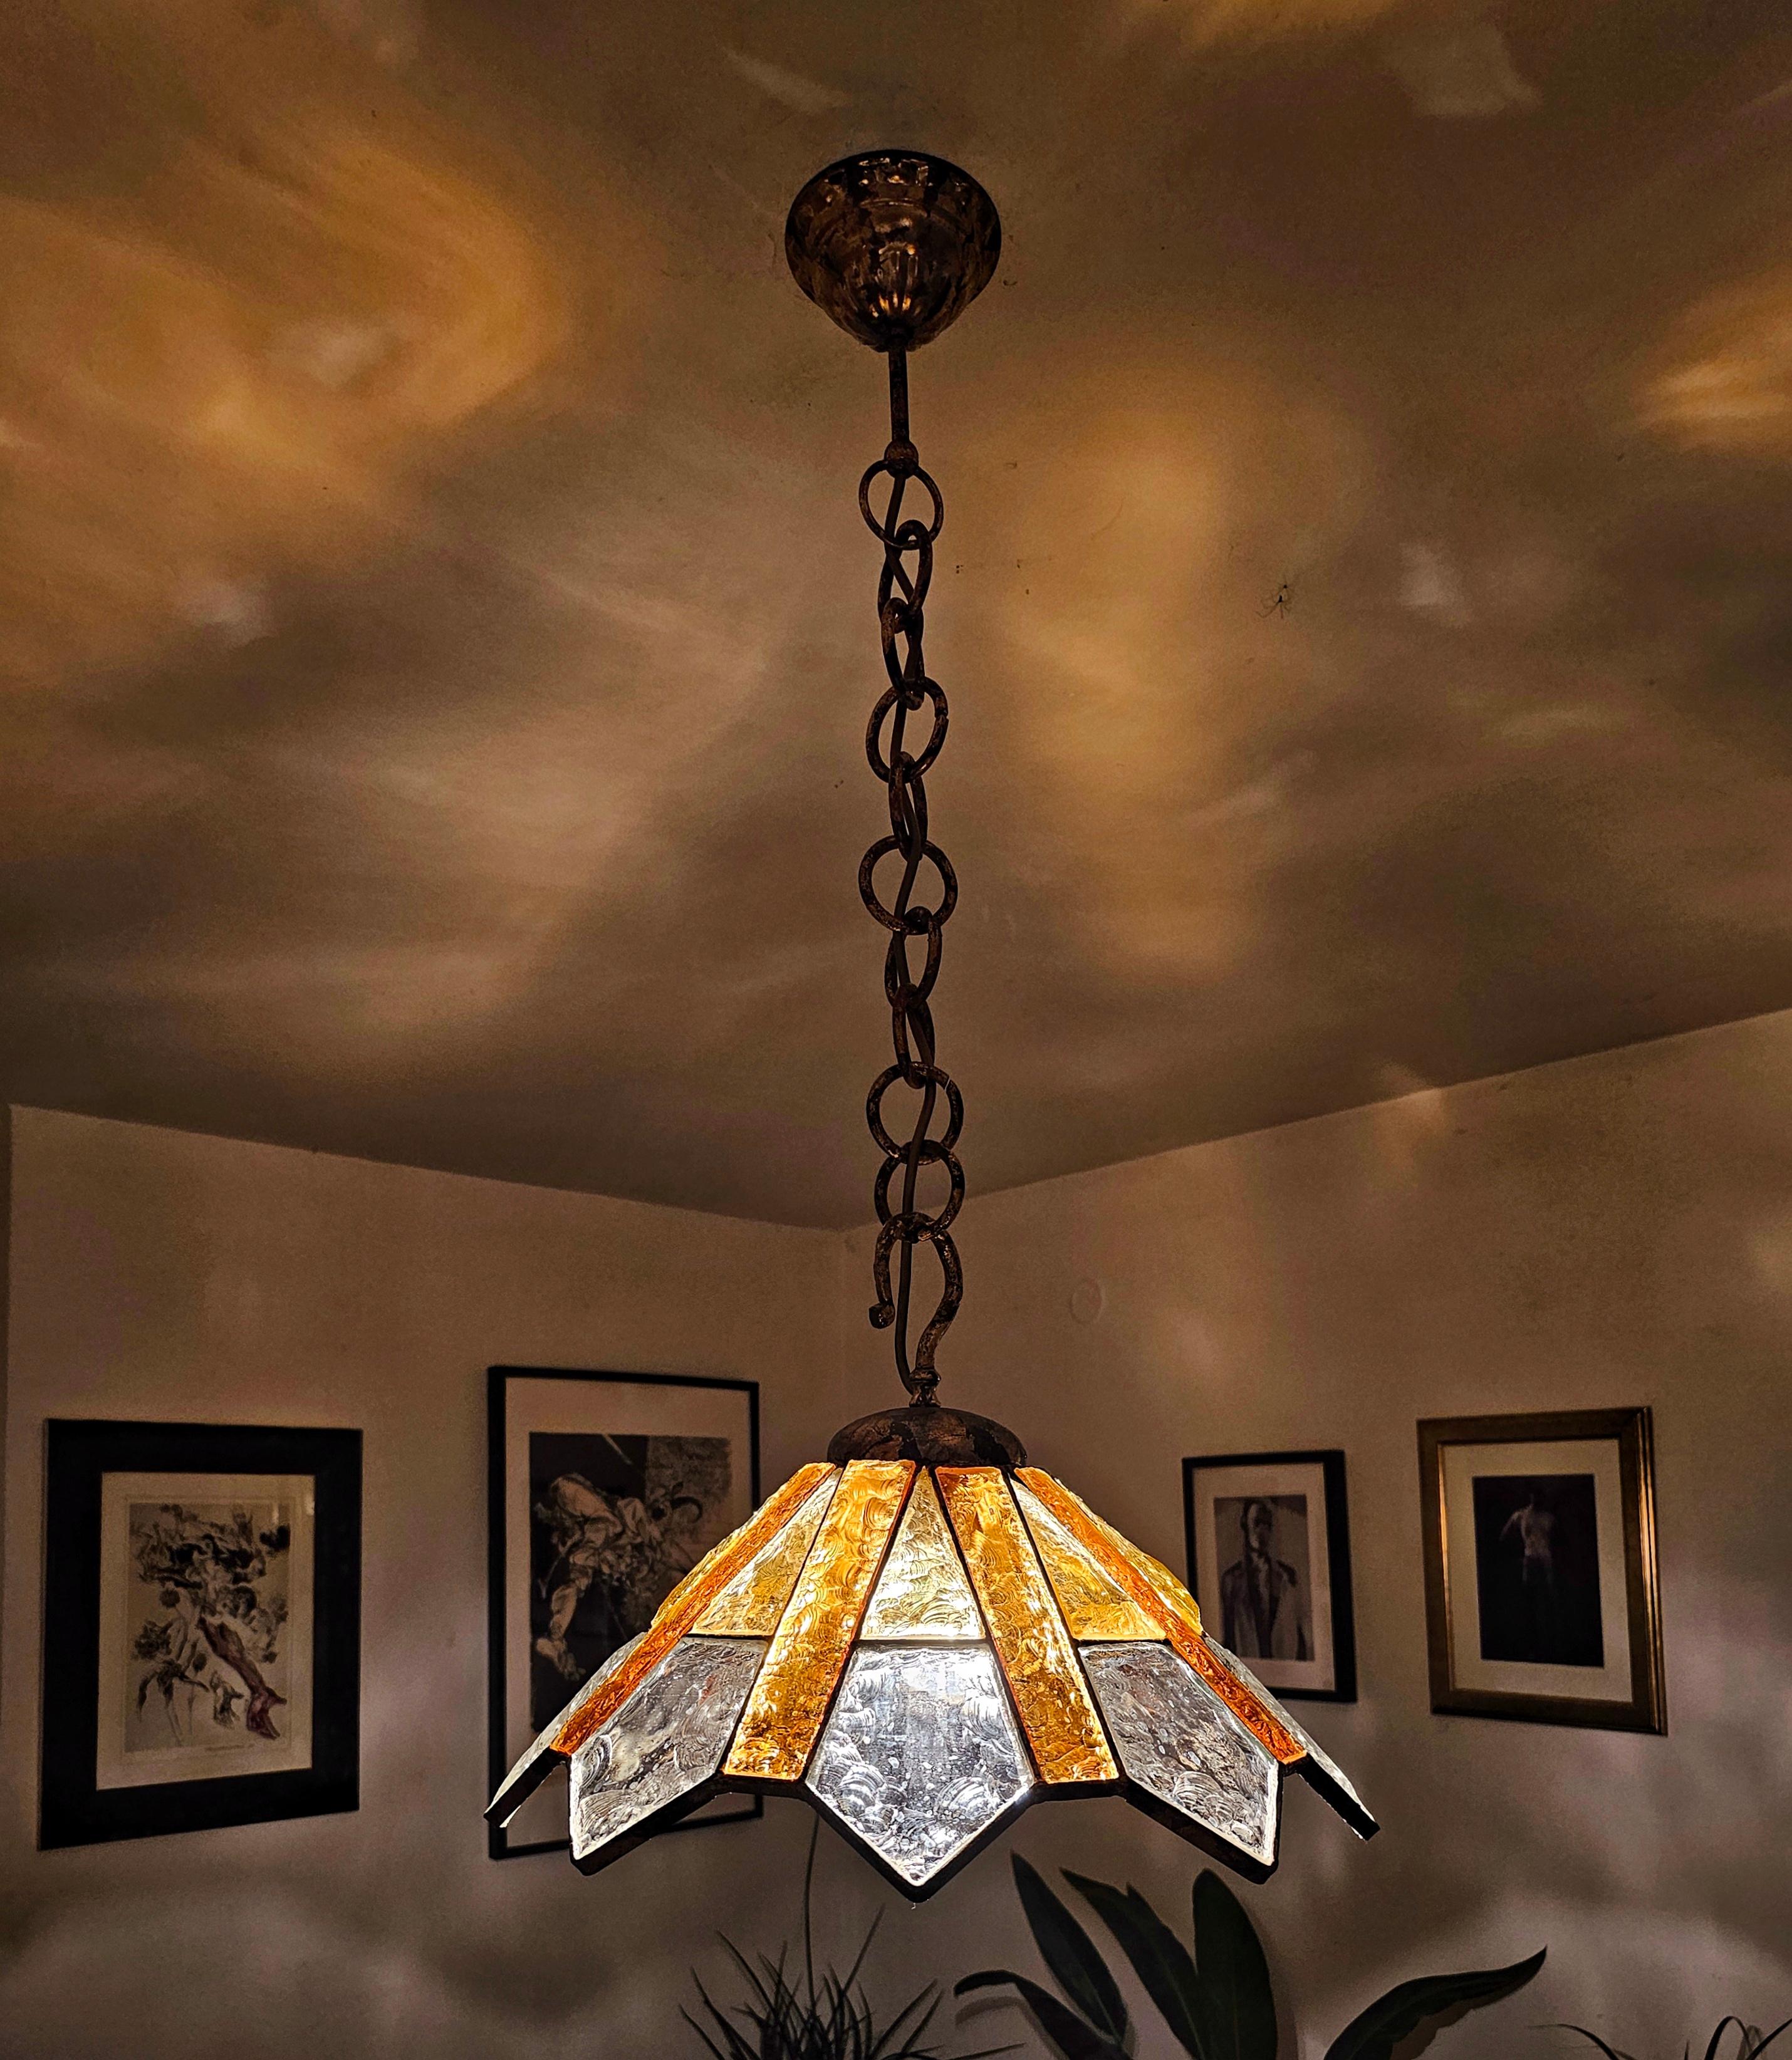 Vous trouverez dans cette annonce une lampe suspendue extrêmement rare, conçue par Longobard. Elle est réalisée en verre clair et ambre martelé, placé dans un luminaire en fer forgé plaqué or. Fabriqué en Italie dans les années 1970.

Très bon état